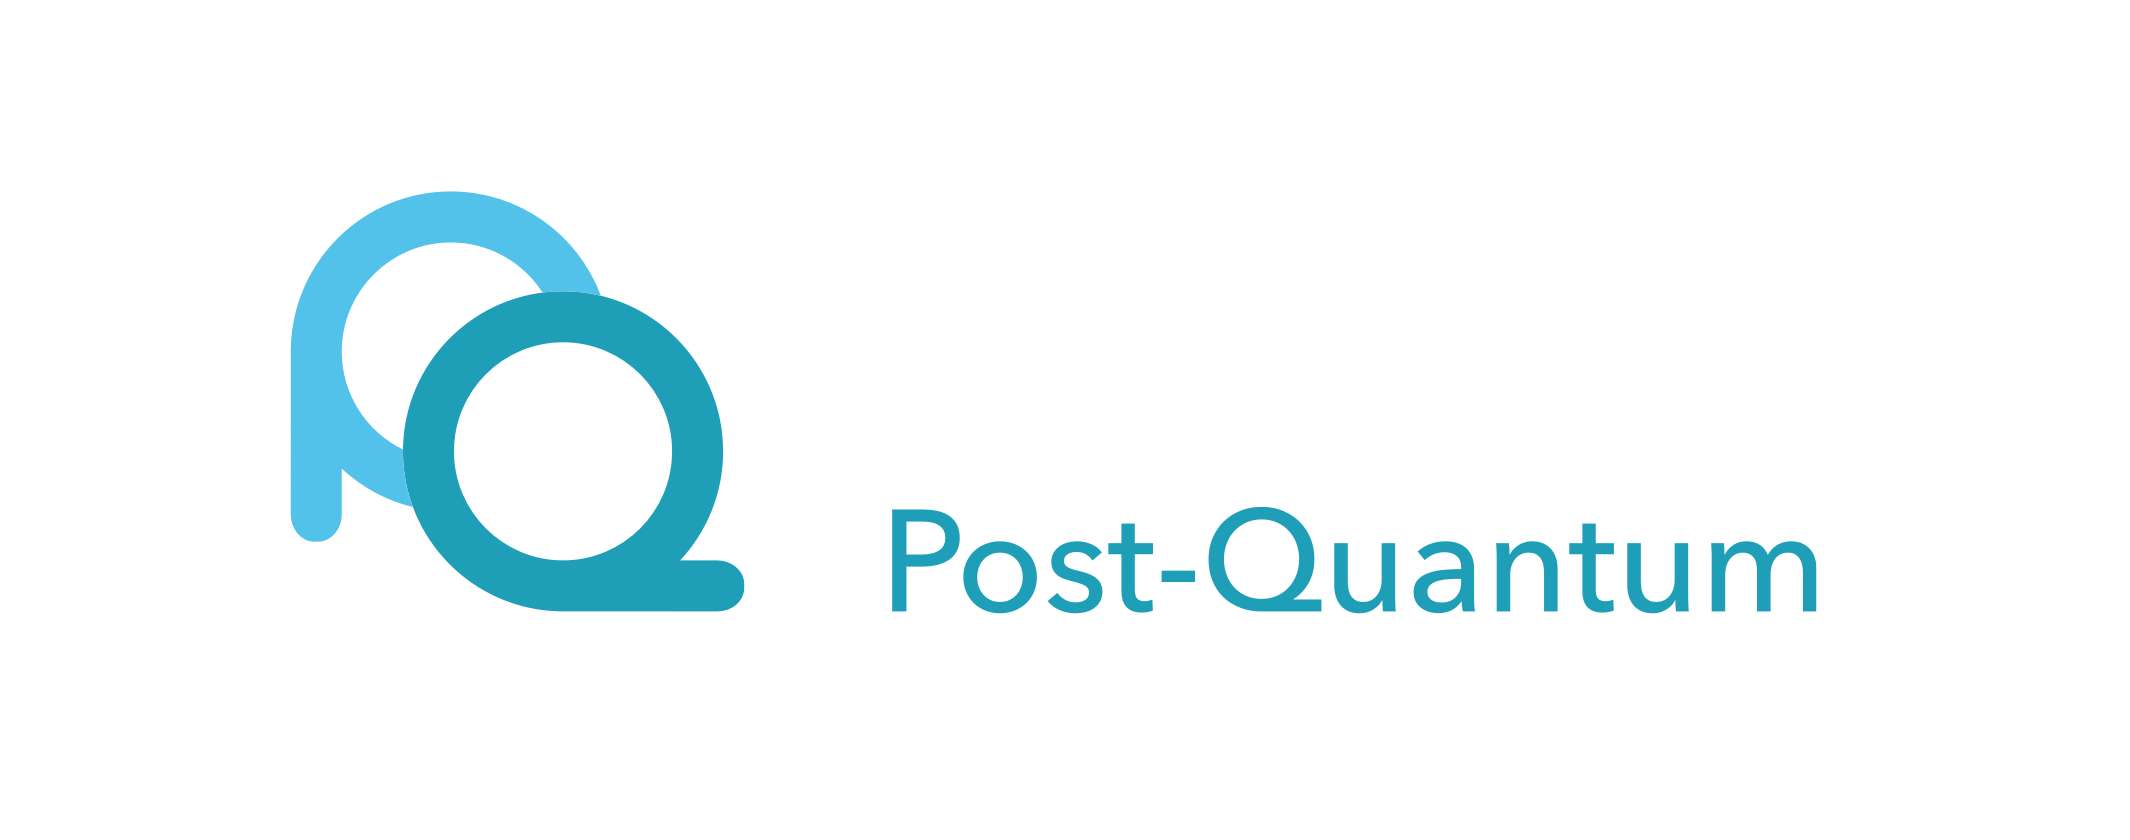 Post-Quantum (PQ Solutions)